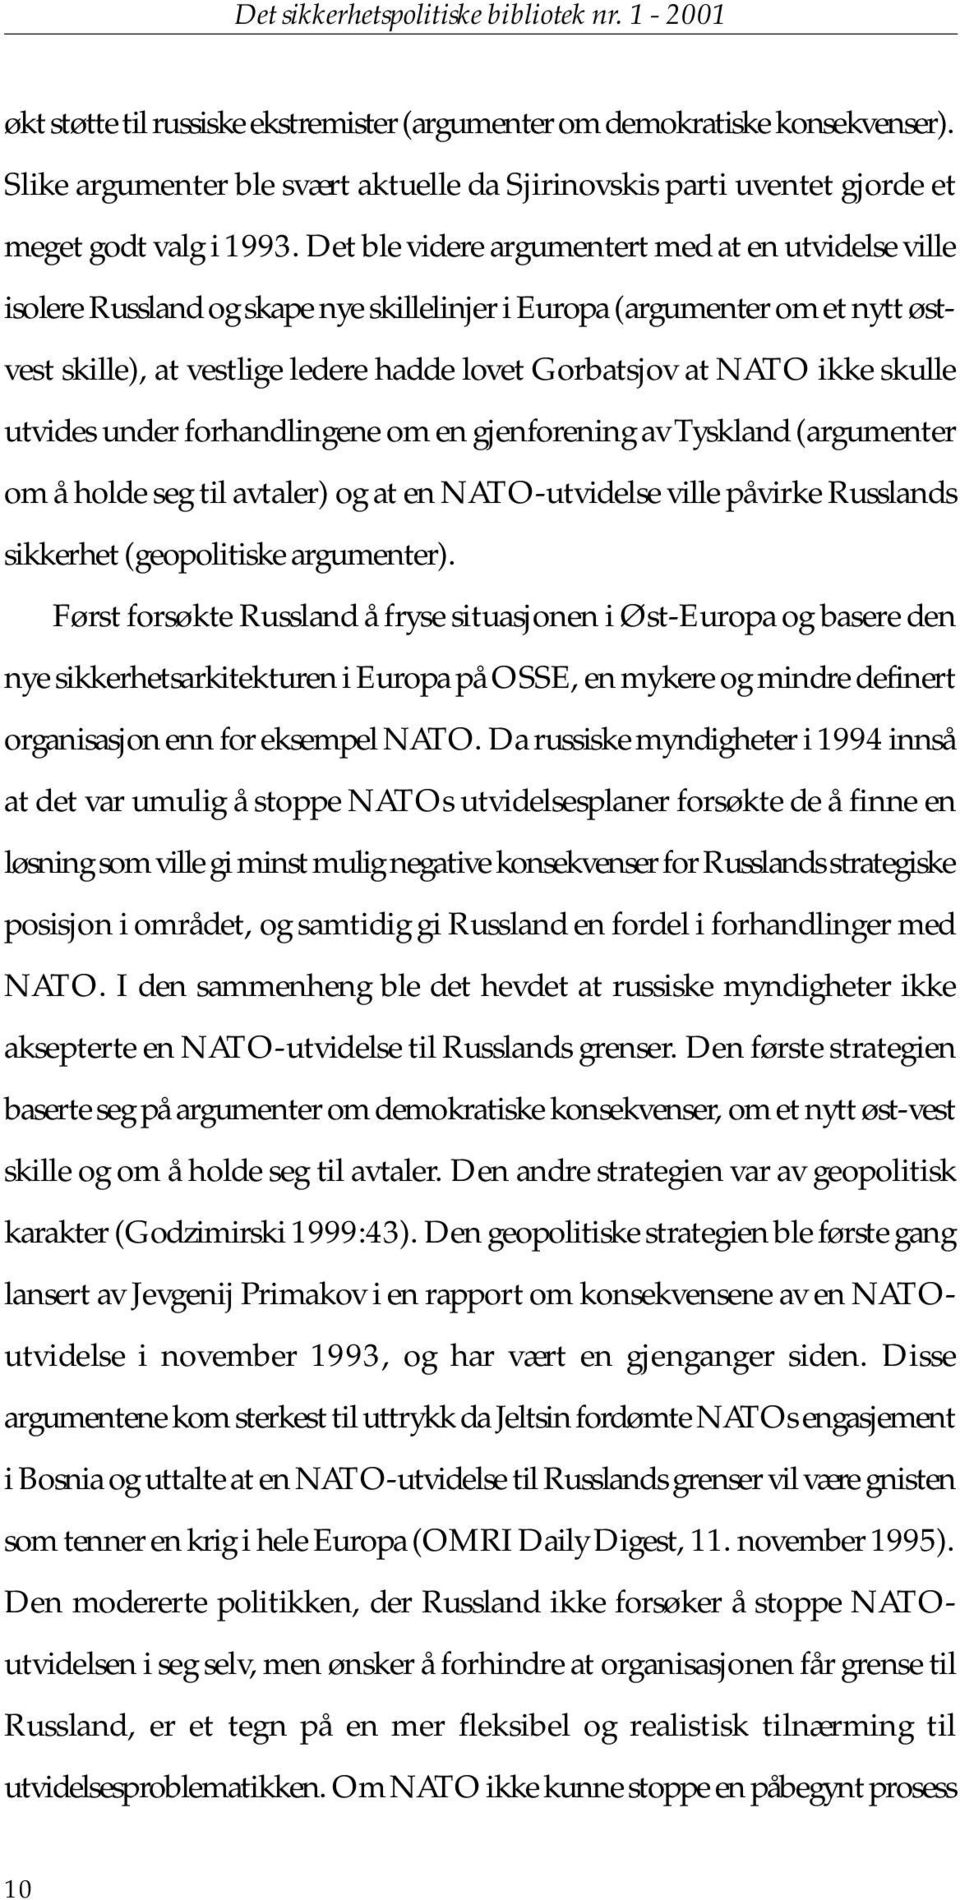 Det ble videre argumentert med at en utvidelse ville isolere Russland og skape nye skillelinjer i Europa (argumenter om et nytt østvest skille), at vestlige ledere hadde lovet Gorbatsjov at NATO ikke